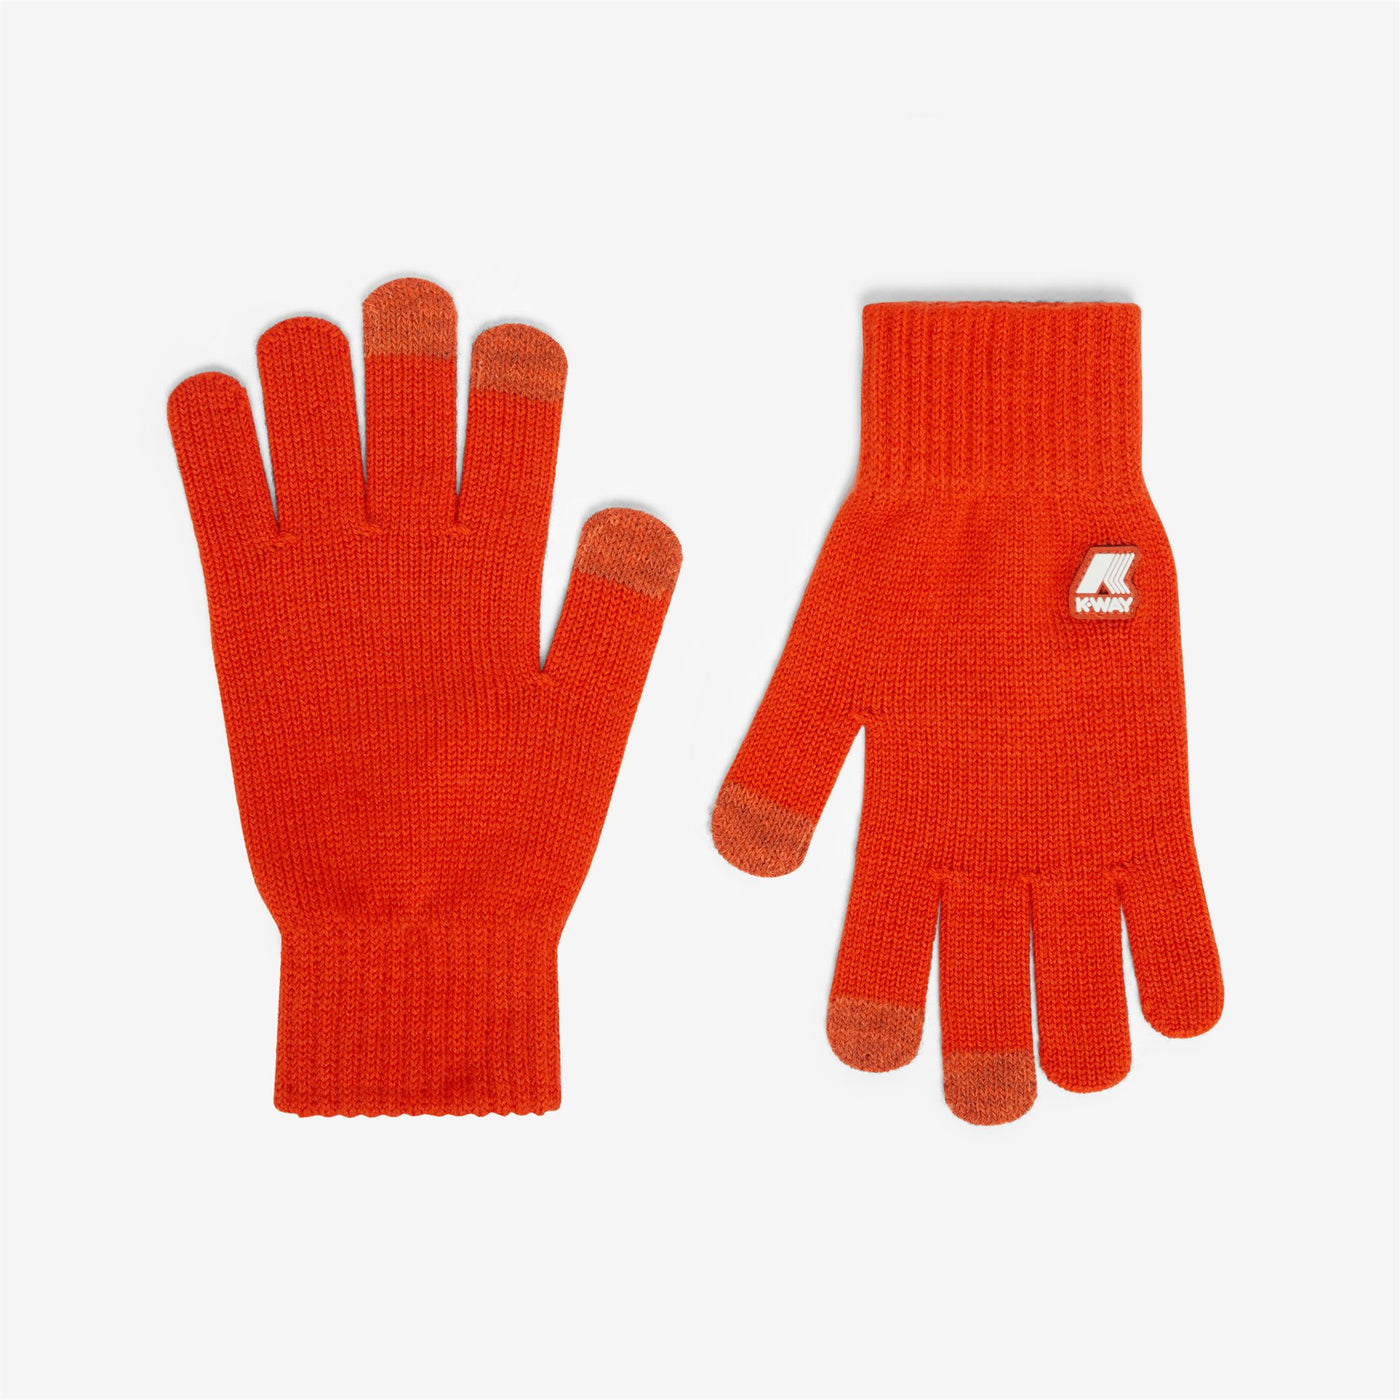 Gloves Unisex ALFRED CARDIGAN STITCH WOOL Glove ORANGE PUMPKIN Photo (jpg Rgb)			